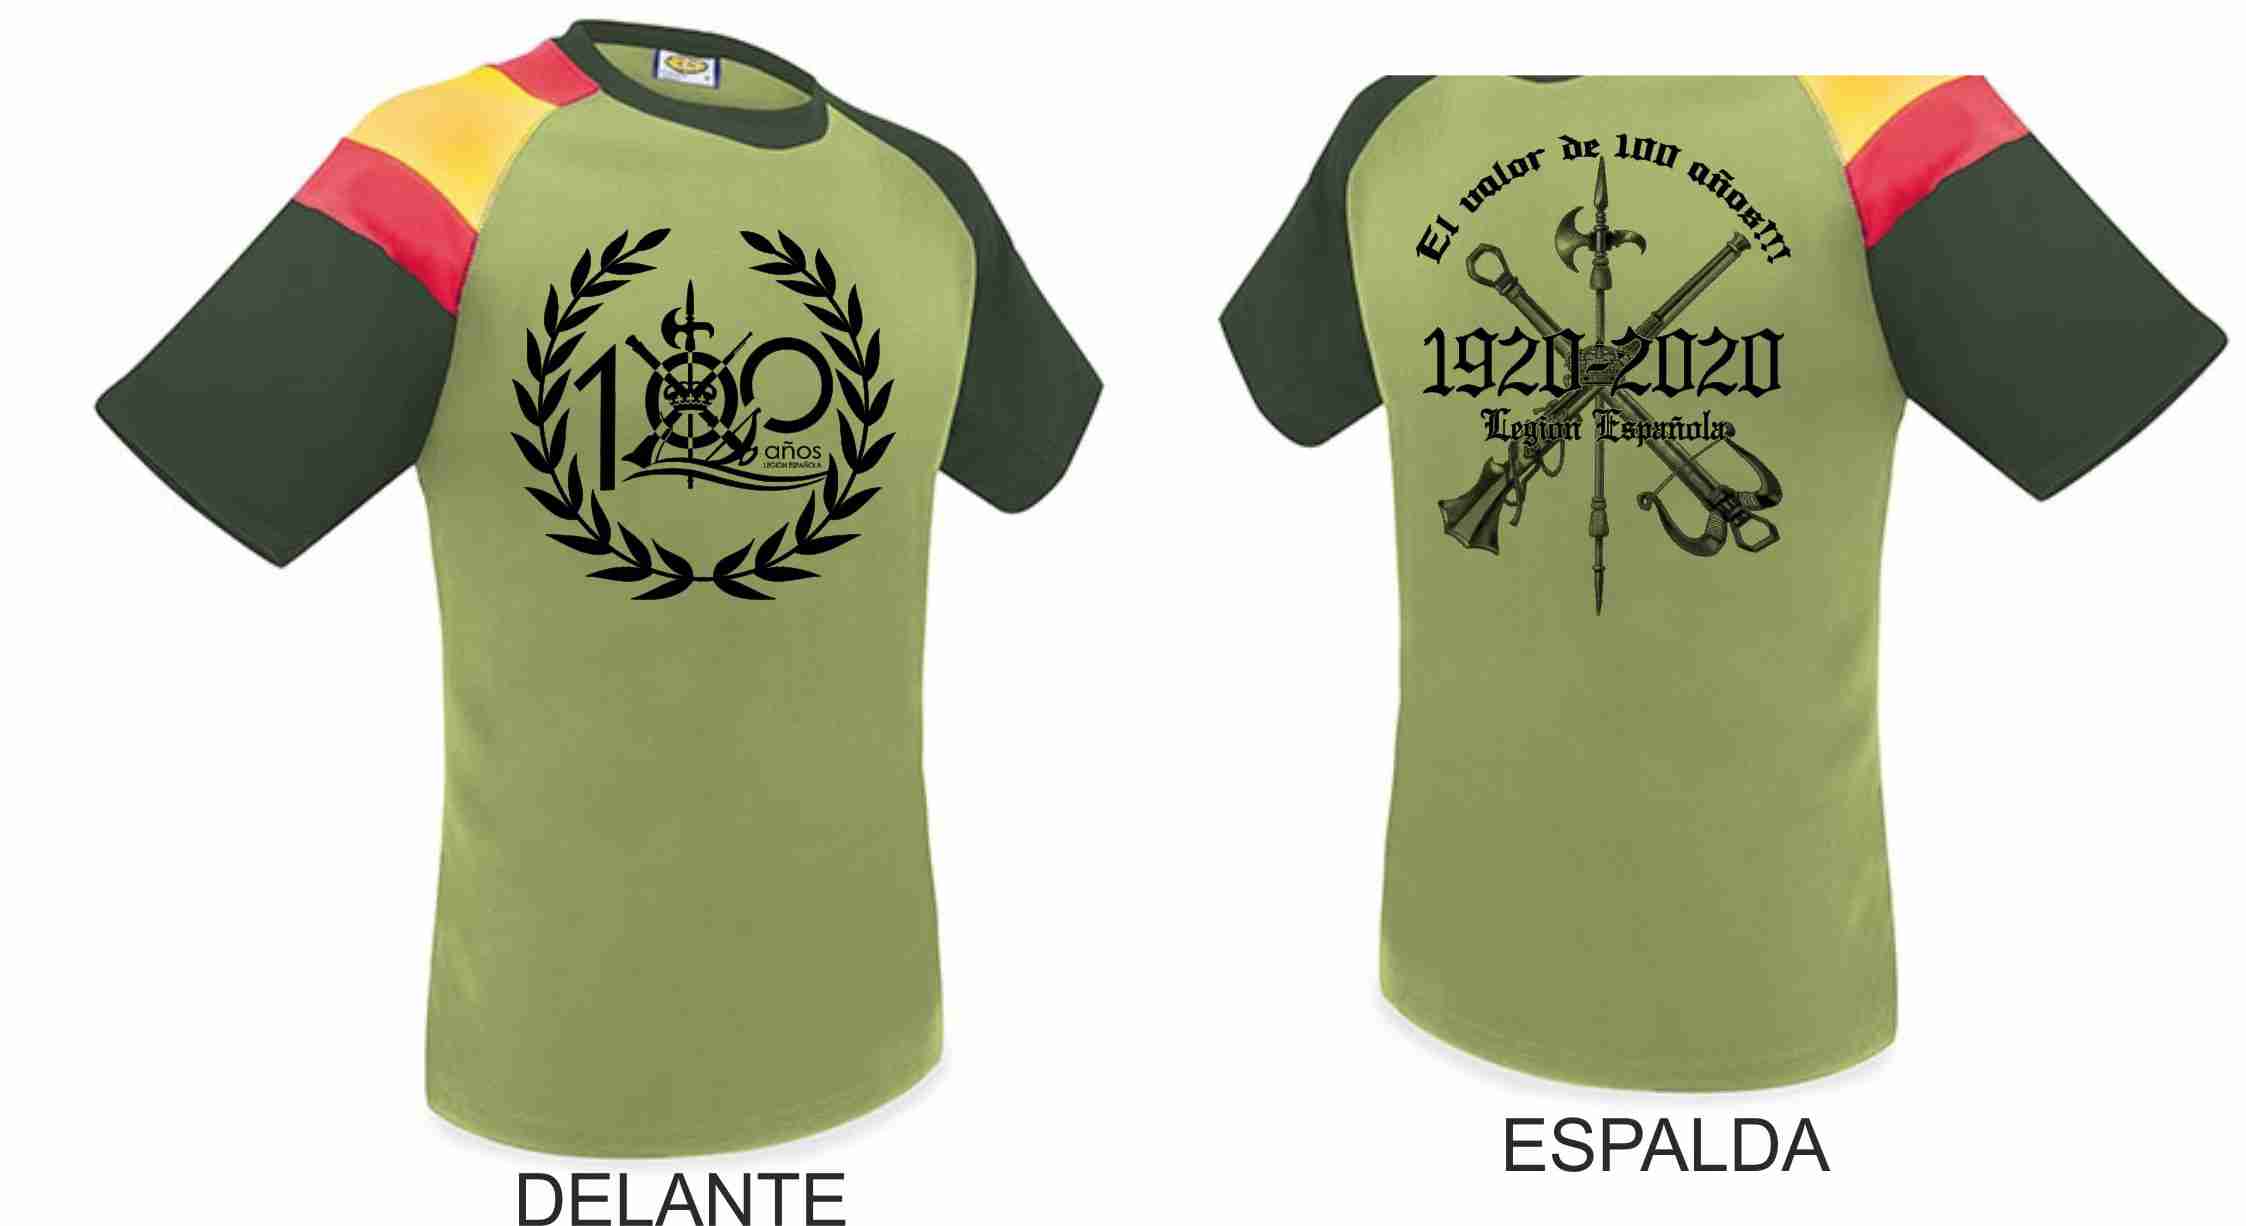 Camiseta Legión Española 100 años. "El valor de 100 años" Polies